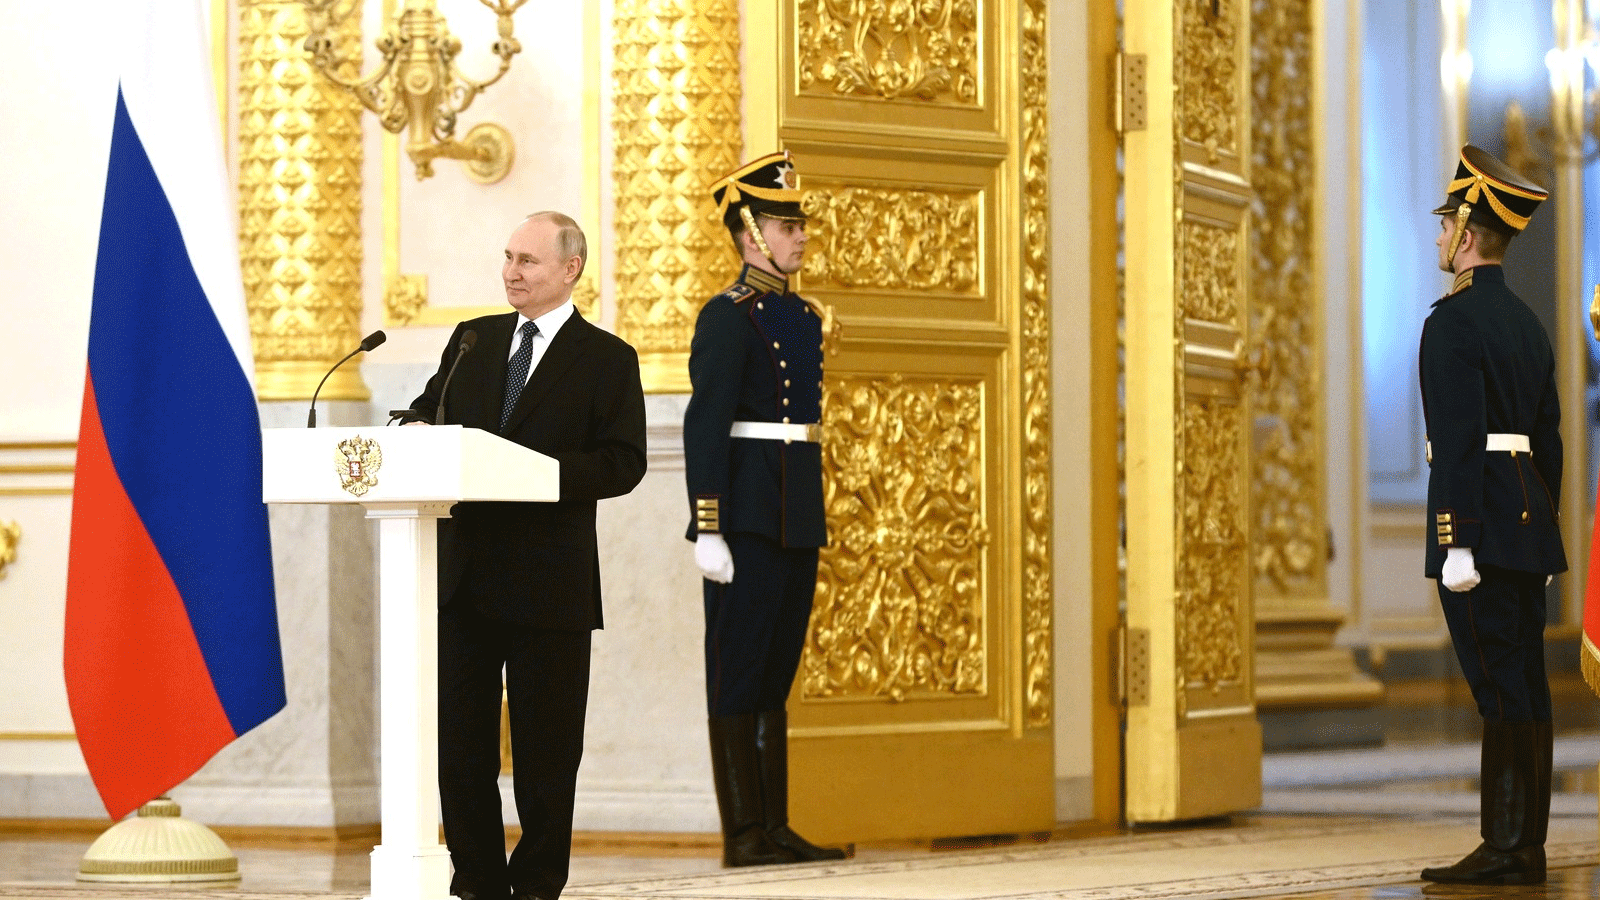 بوتين خلال حفل تسلم اوراق اعتماد السفراء(الكرملين)